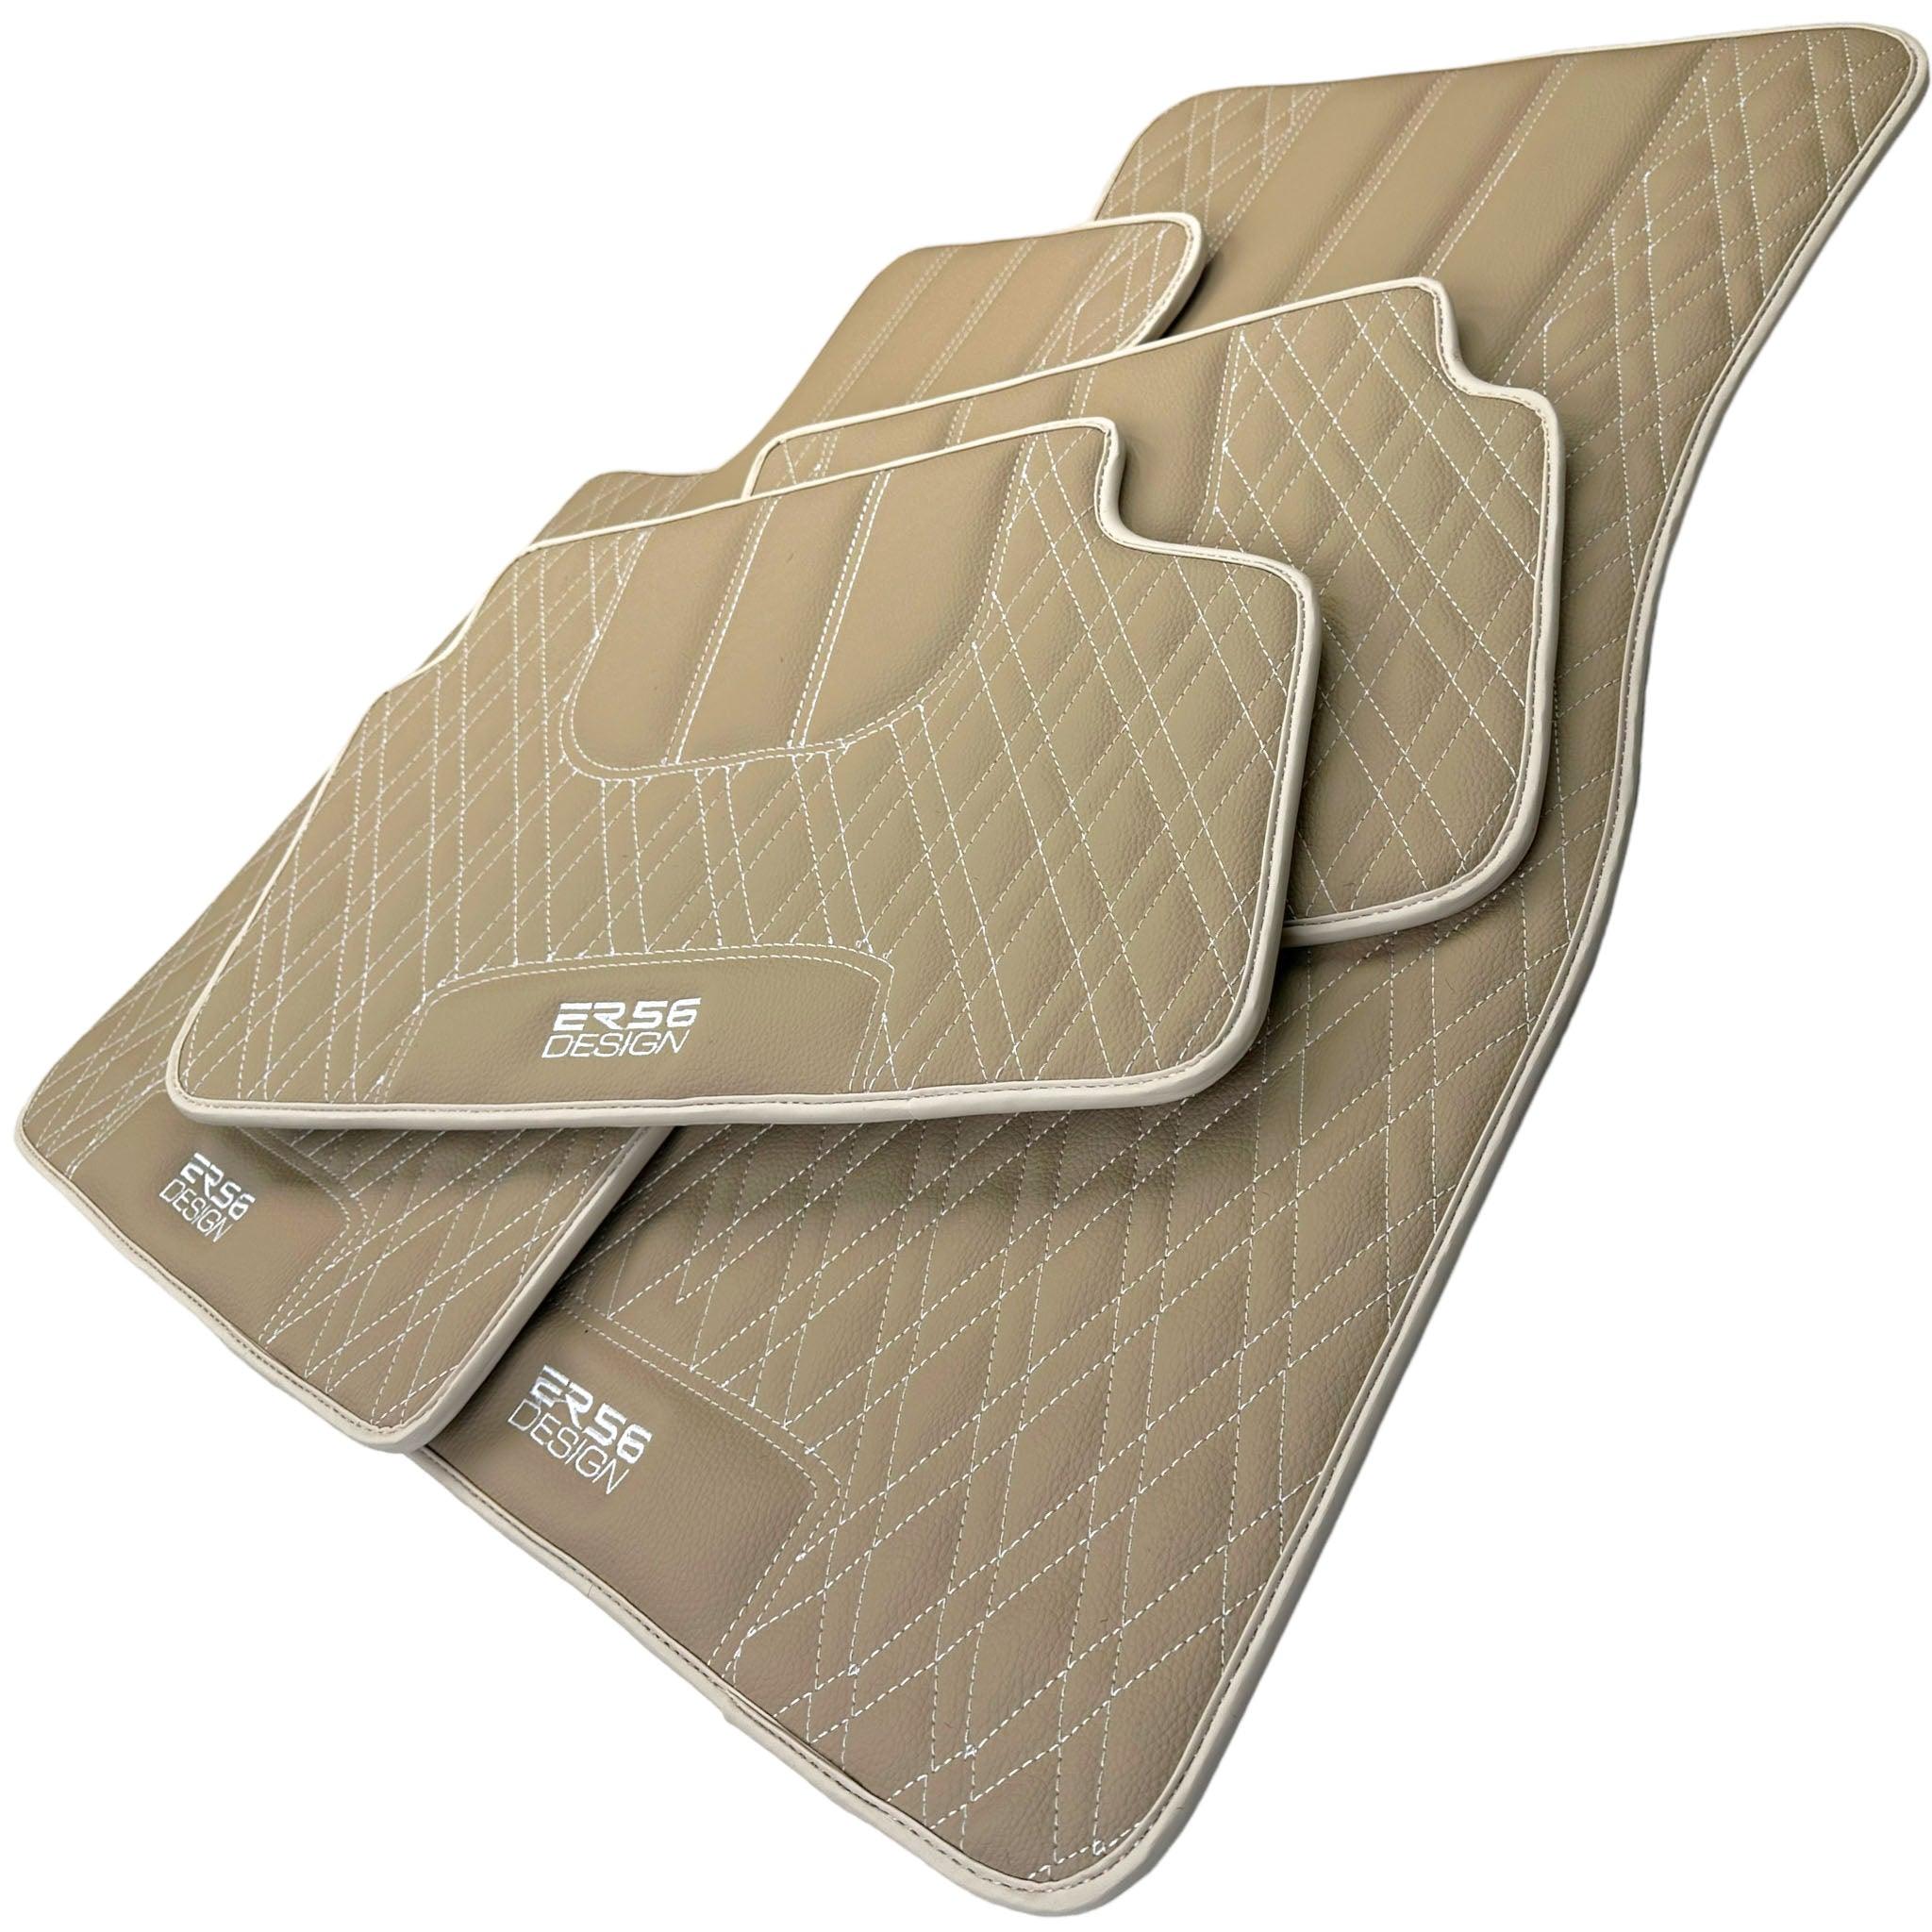 Beige Leather Floor Mats For BMW 6 Series F13 2-door Coupe